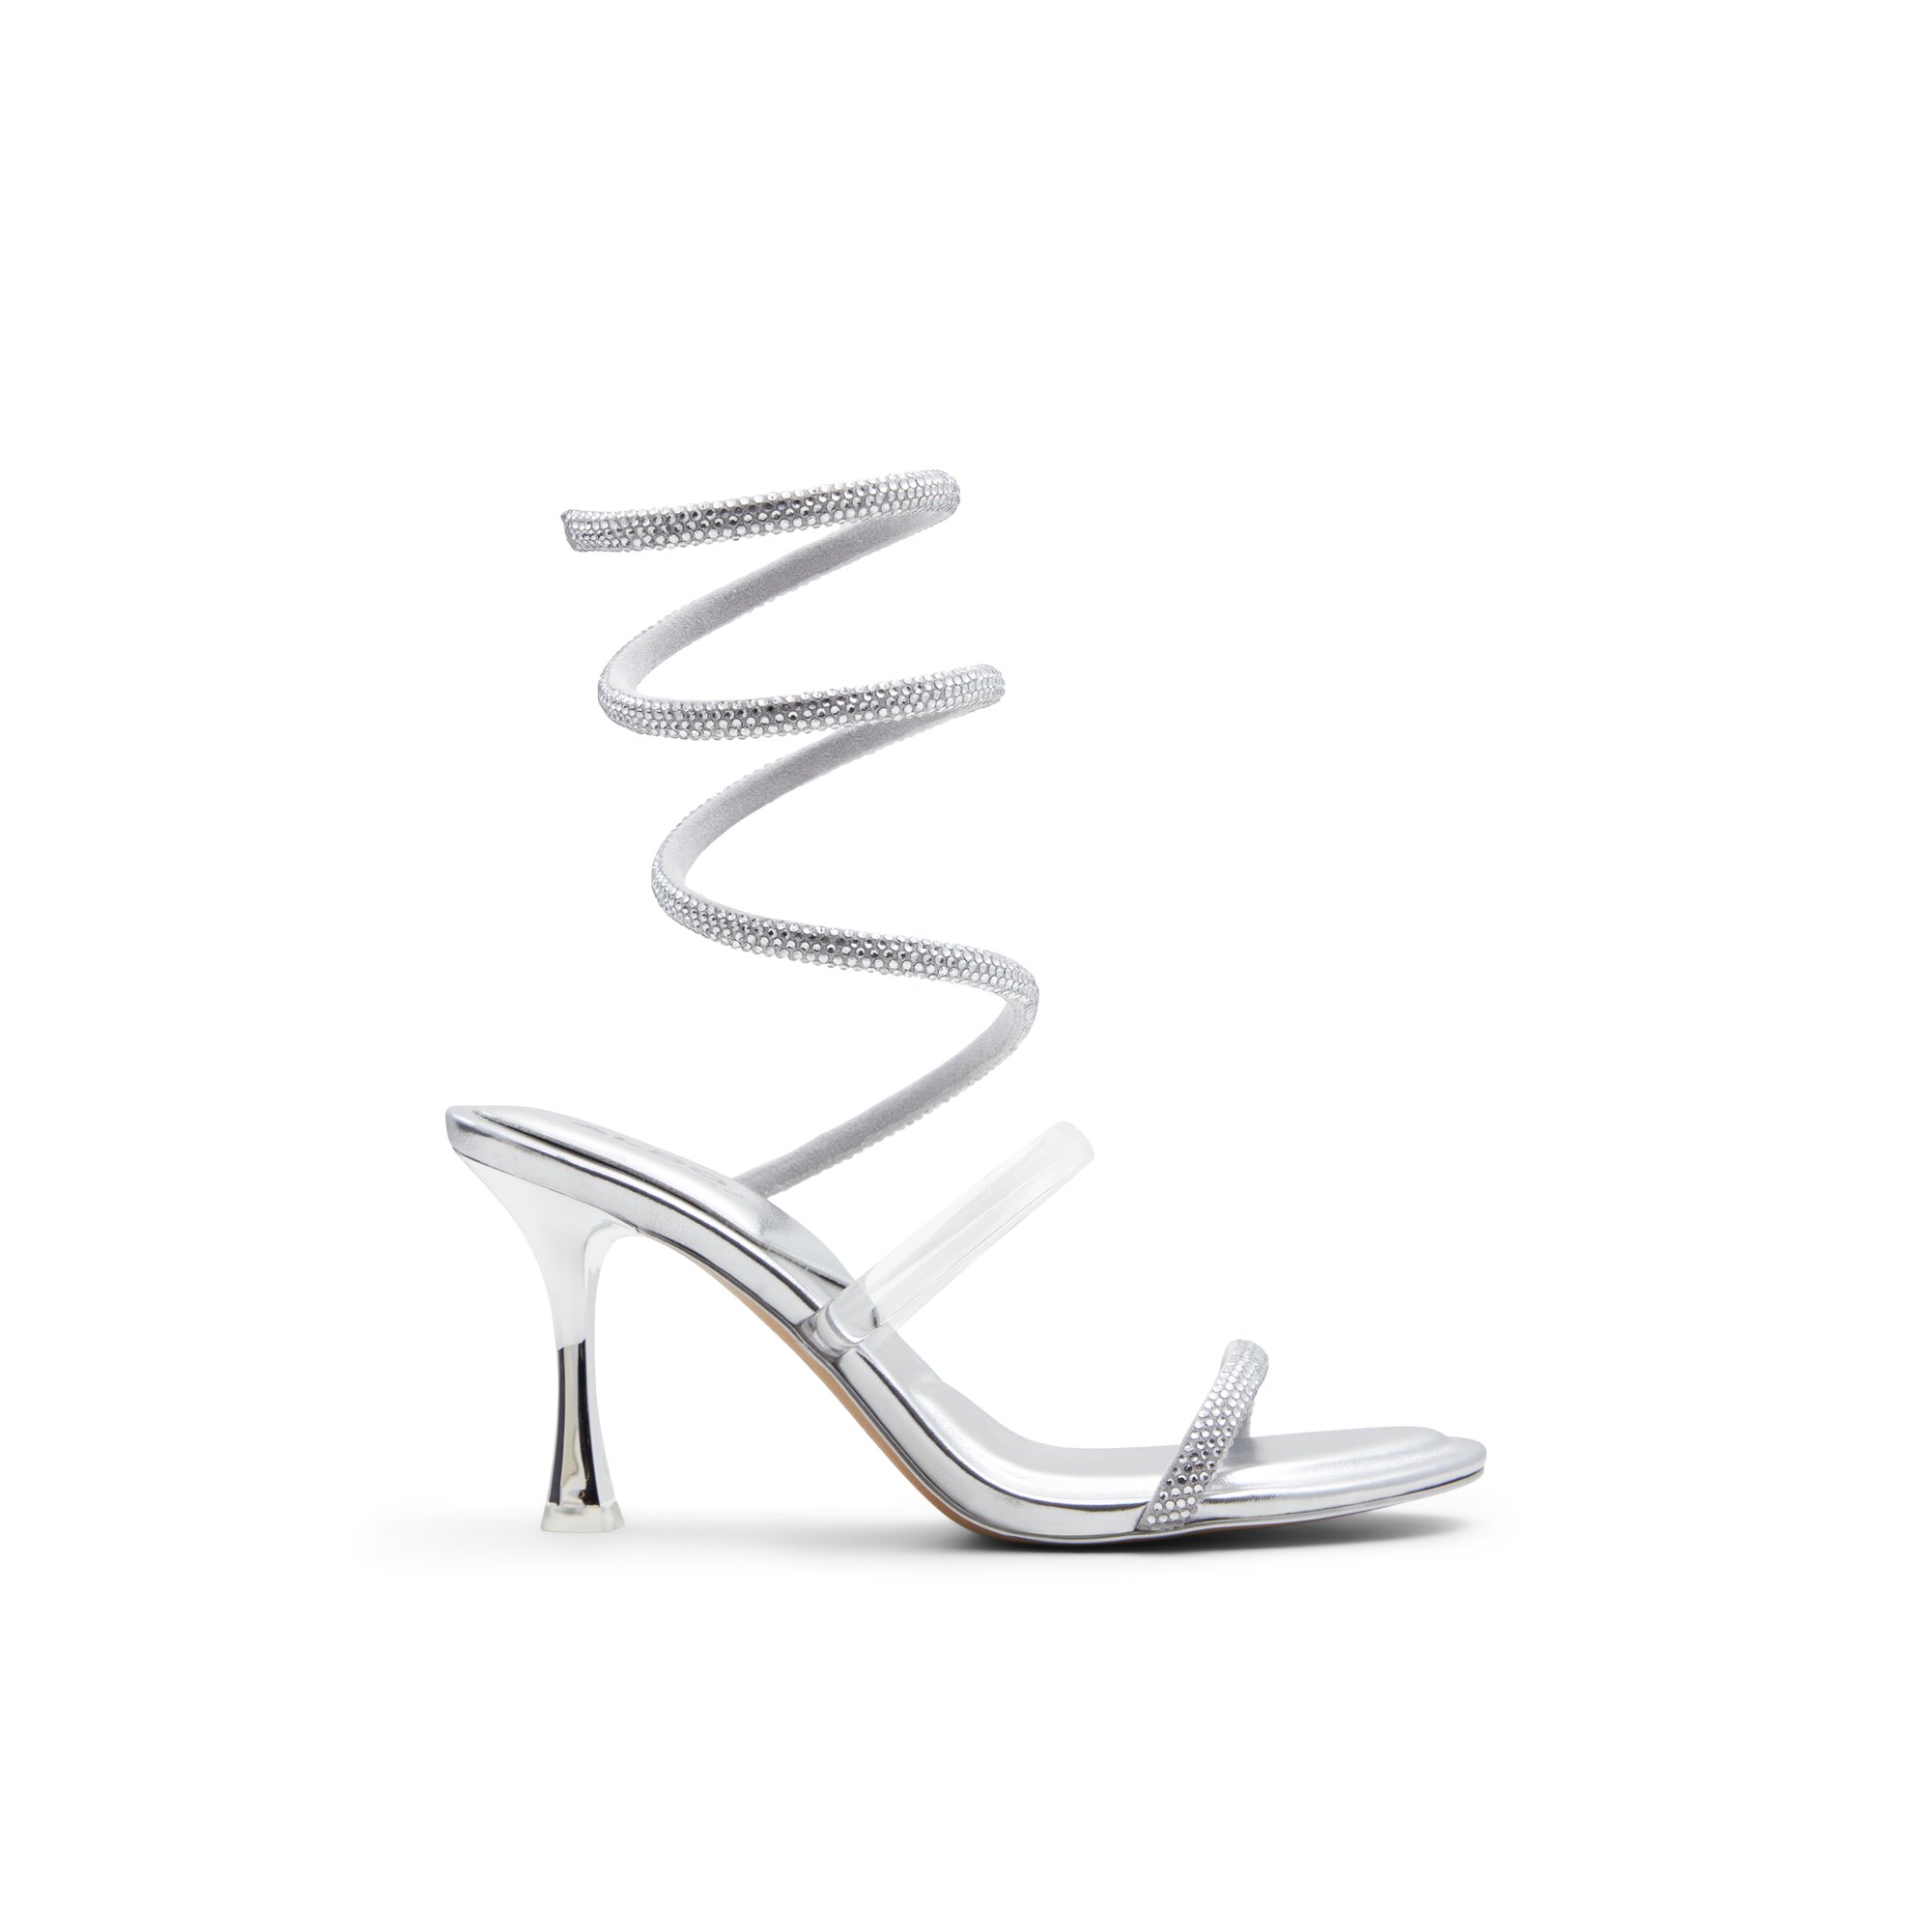 ALDO Pirouette - Women's Sandals Strappy - Silver